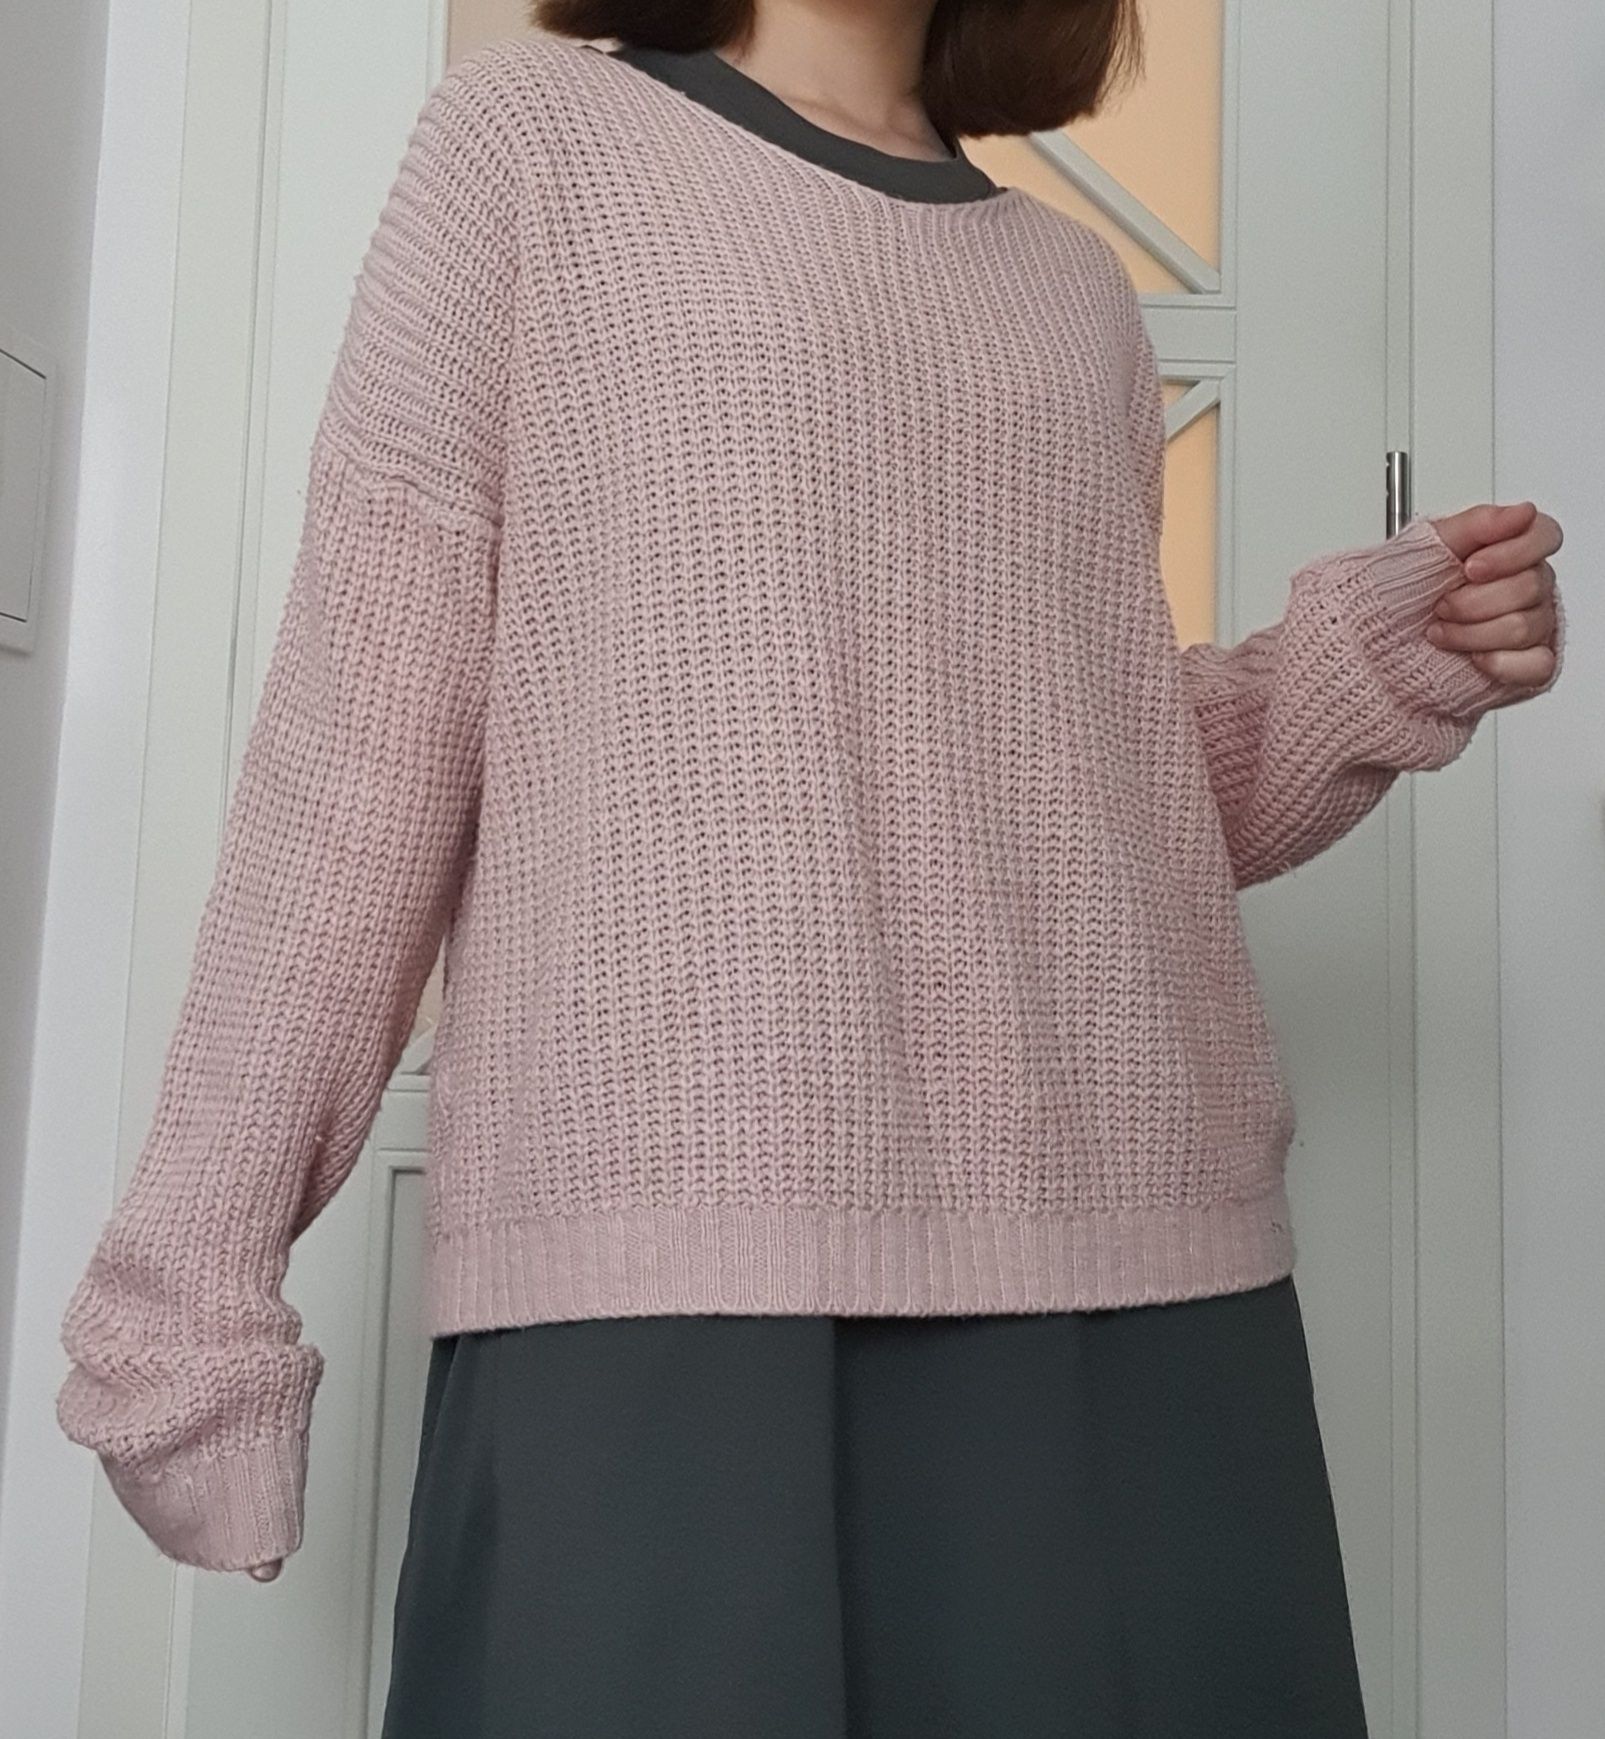 różowy, cienki sweterek